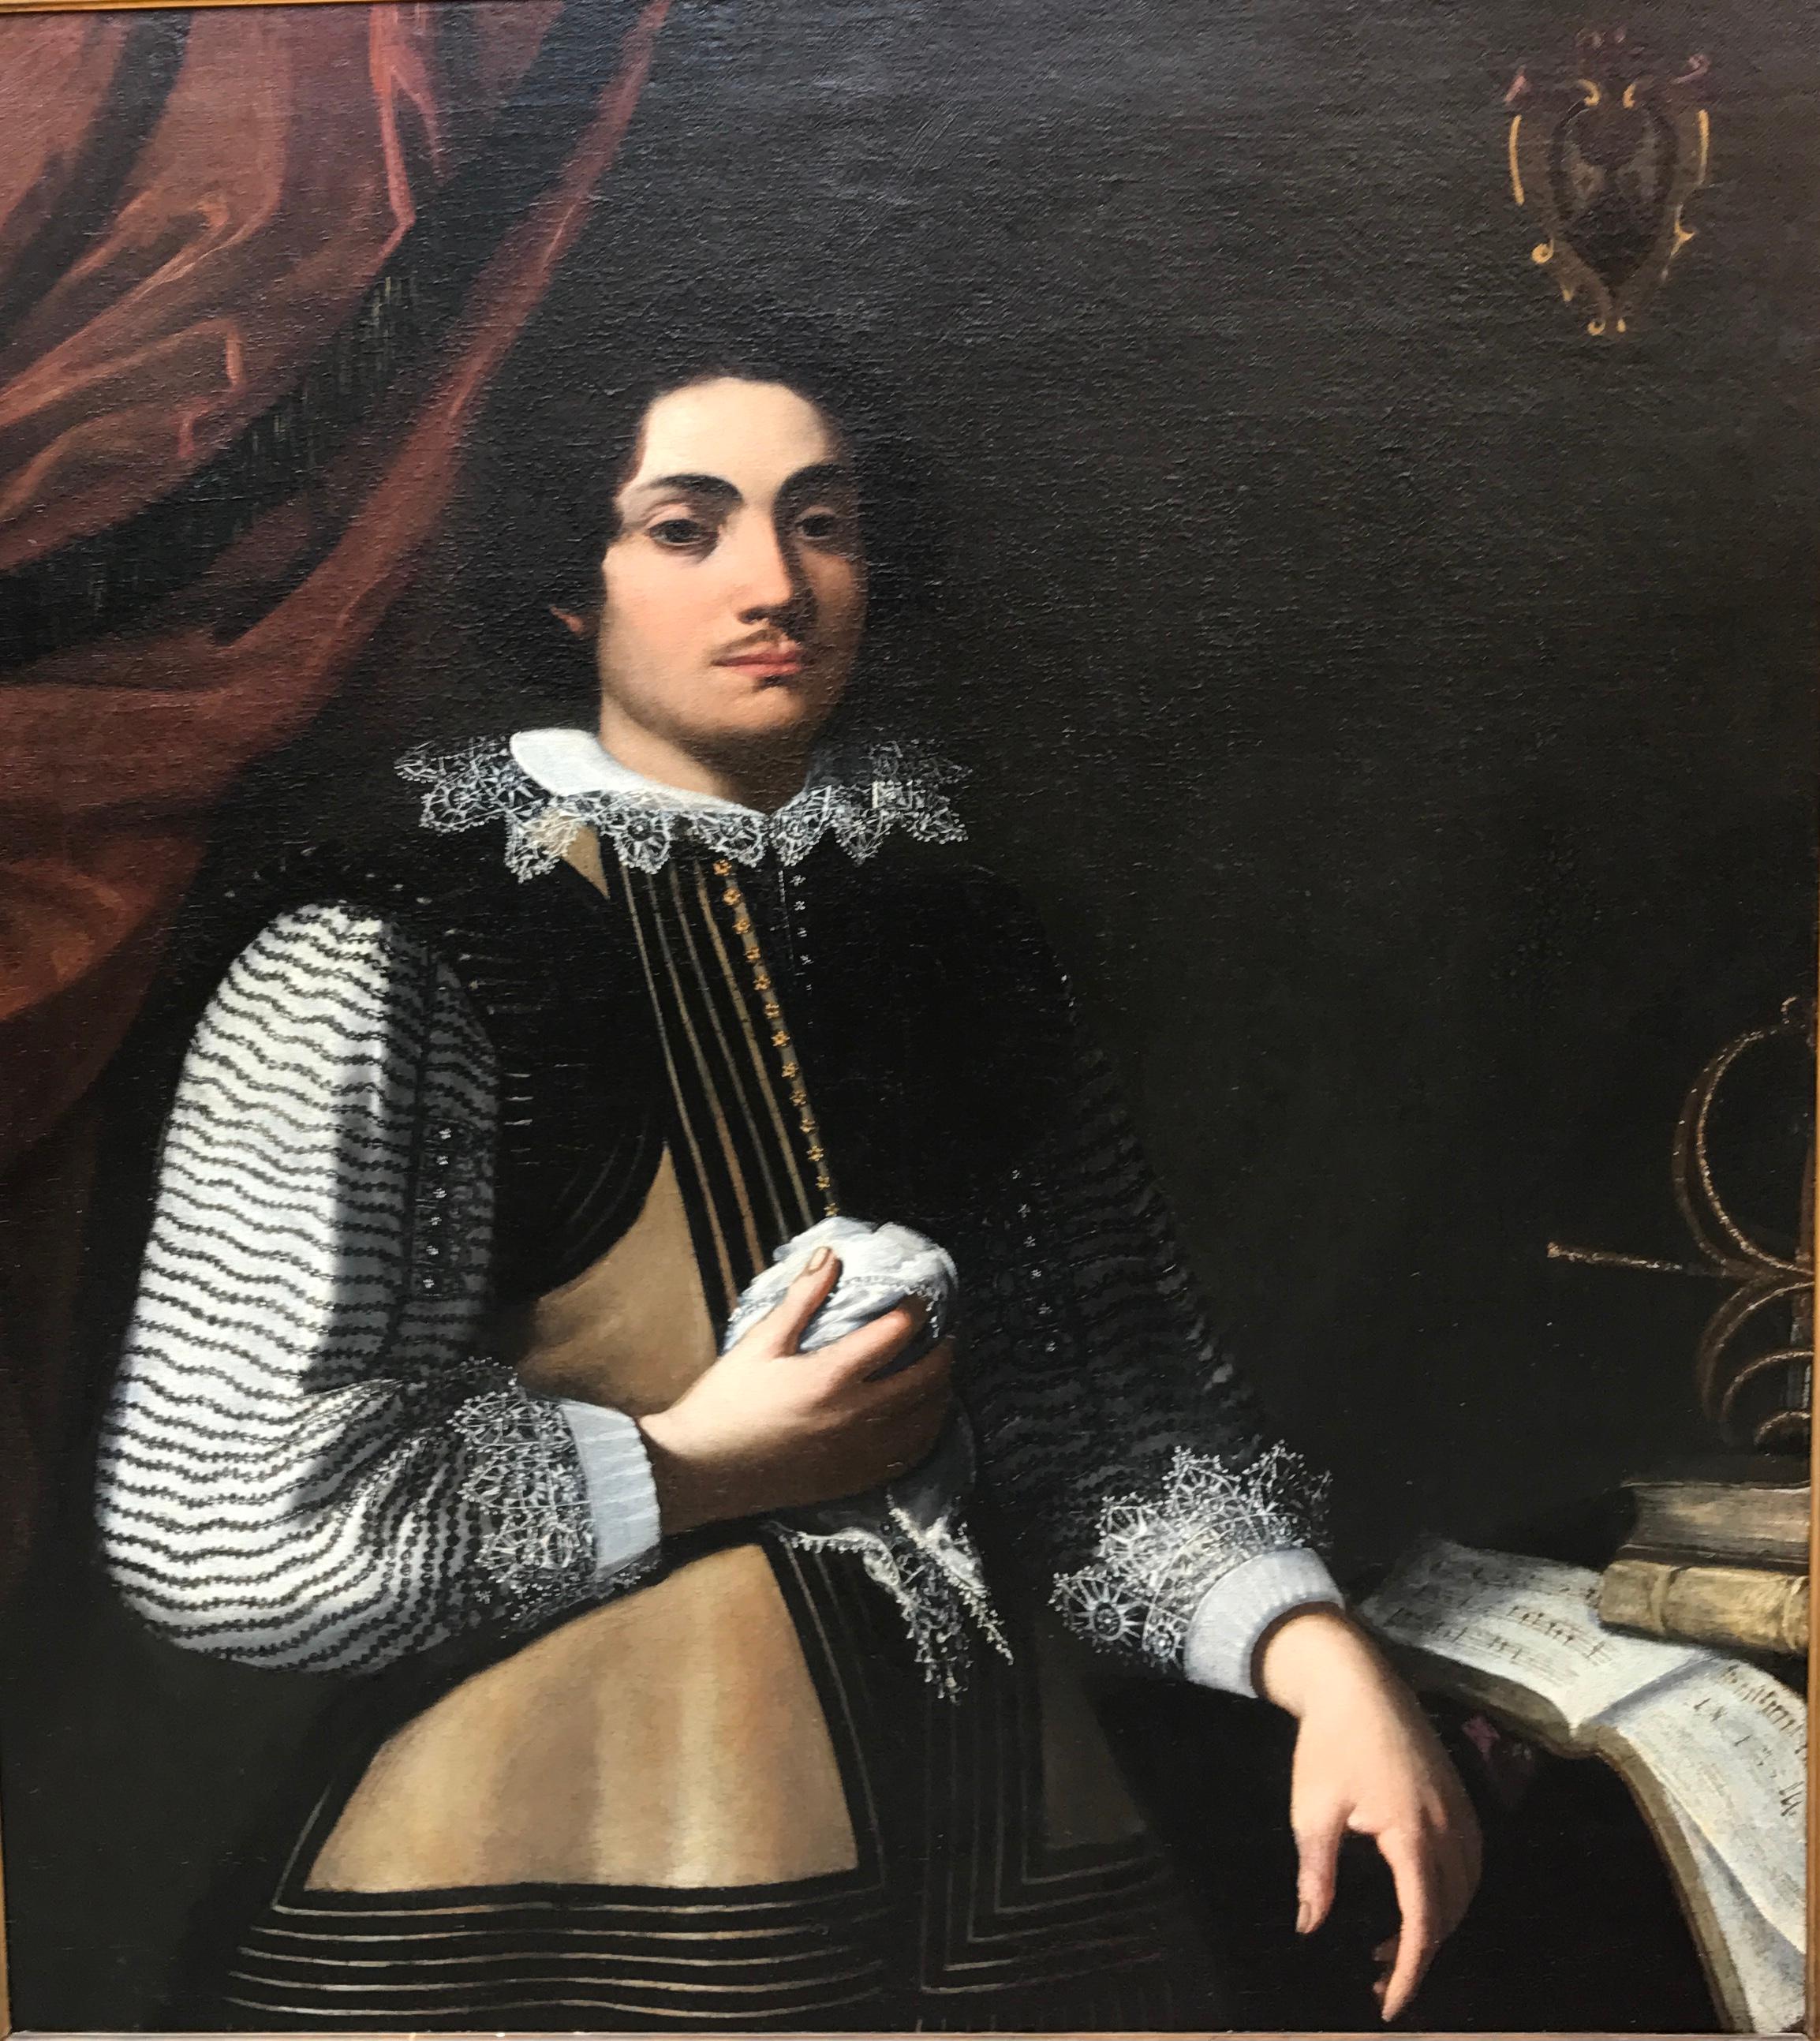 Italienisches Ölgemälde des 17. Jahrhunderts, Porträt des Musikers Prodigy Girolamo Frescobaldi – Painting von Antiveduta della Grammatica